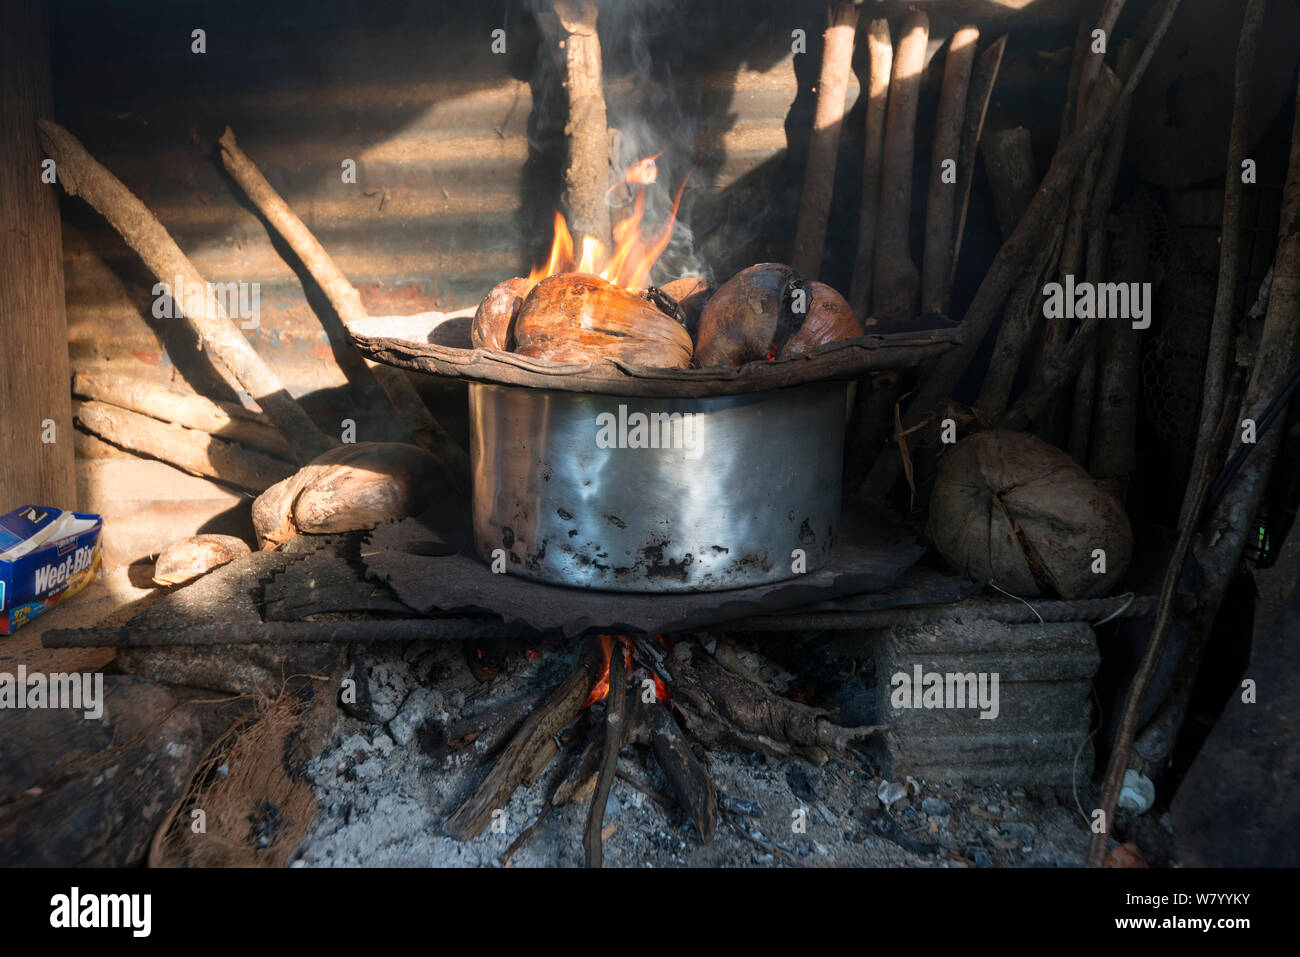 Cuisine Fidjienne en plein air avec four à charbon, le Mali, l'île de la province de Macuata, Fidji, Pacifique Sud. Août 2013 Banque D'Images